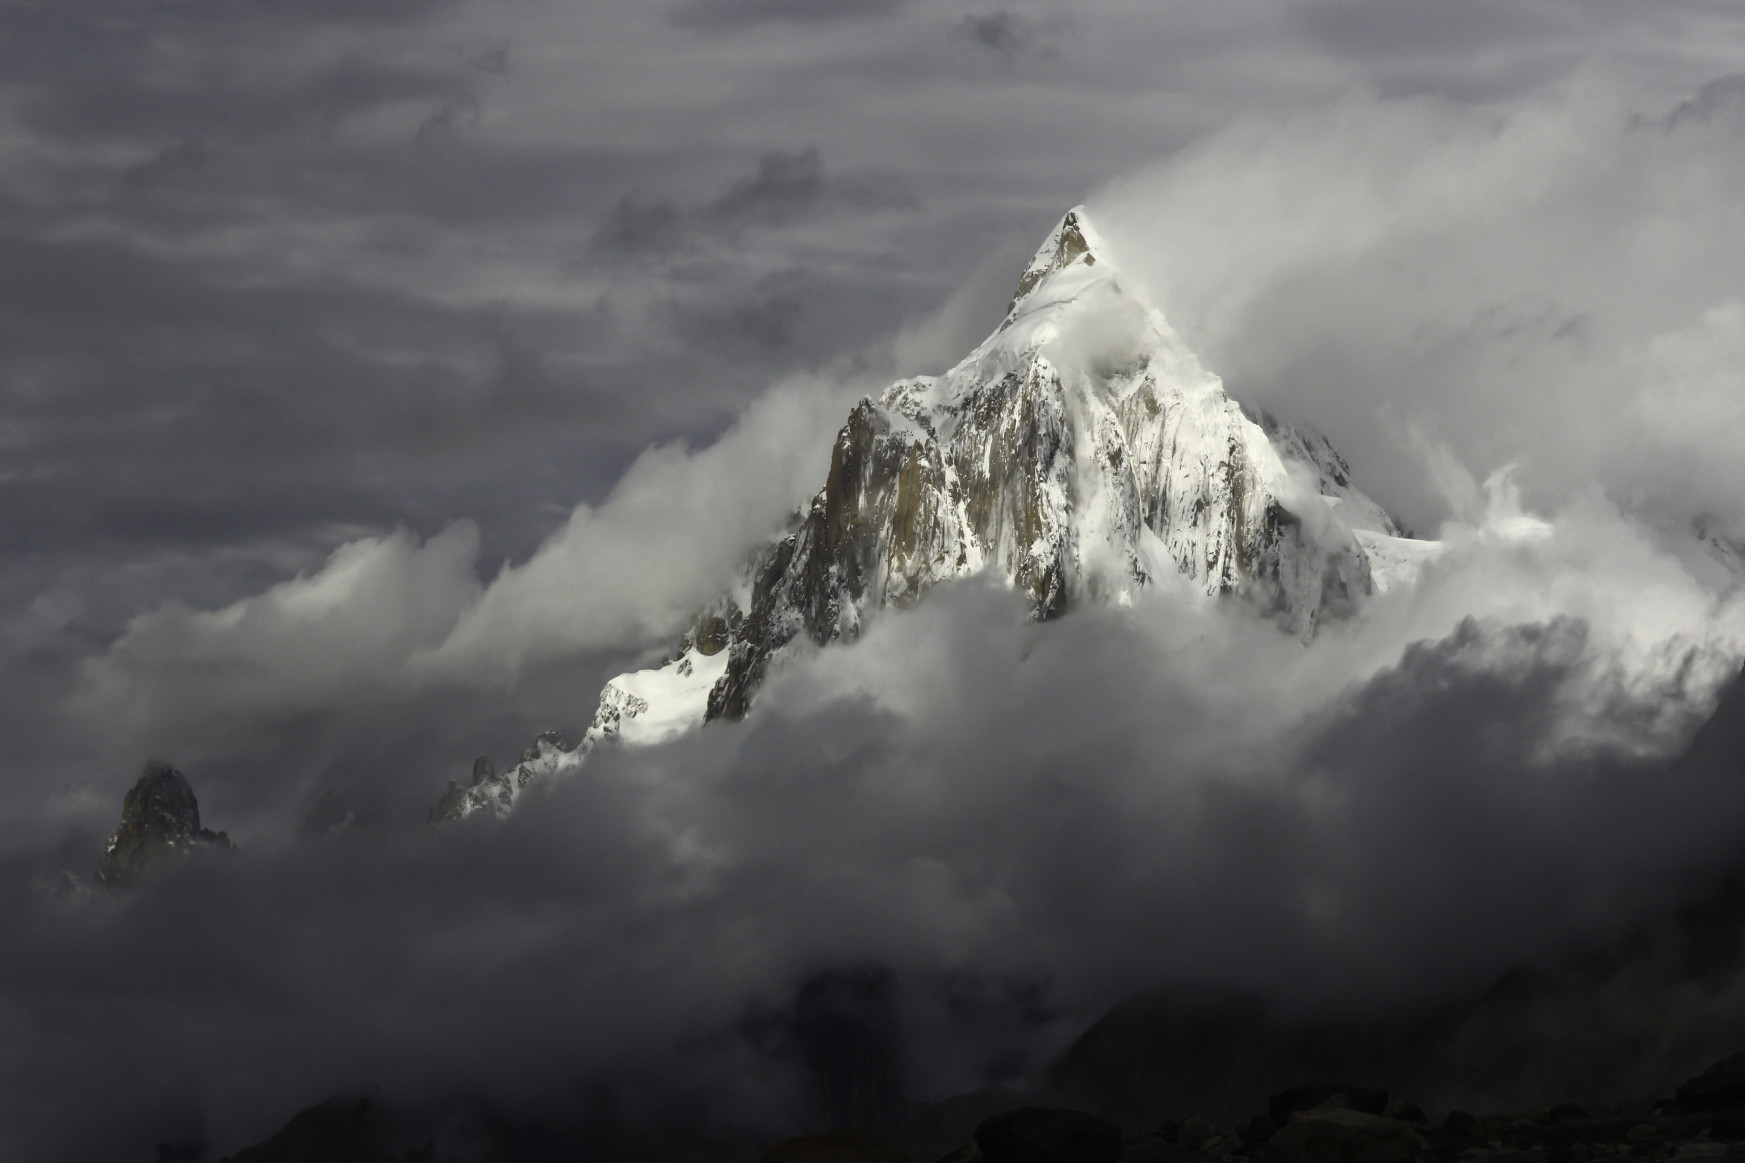 Halálos valóságshow zajlik a világ második legmagasabb hegyén